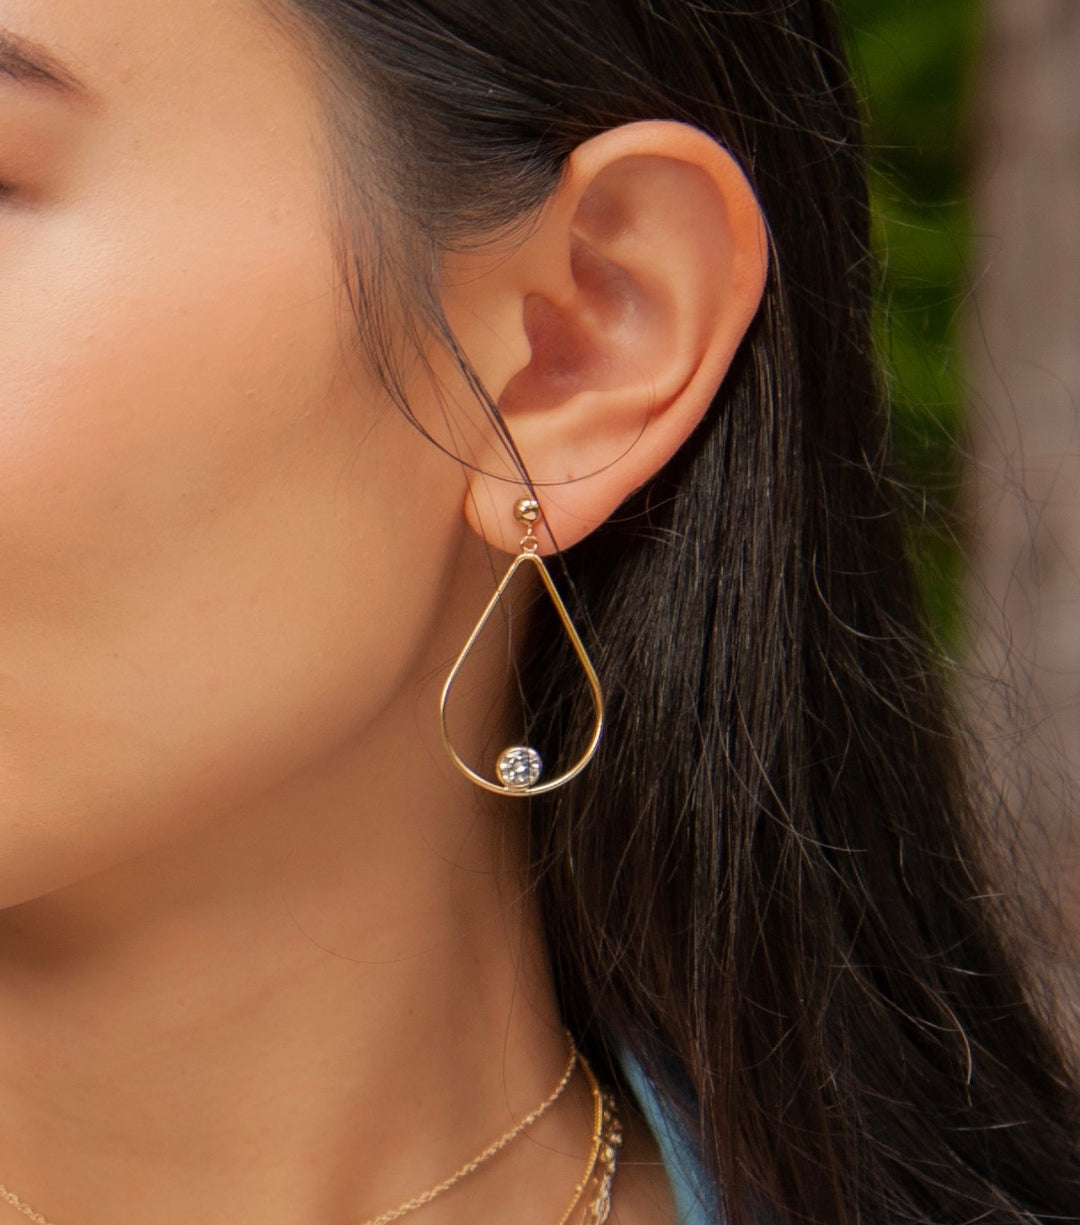 Teardrop CZ Post Earrings in Gold-Filled